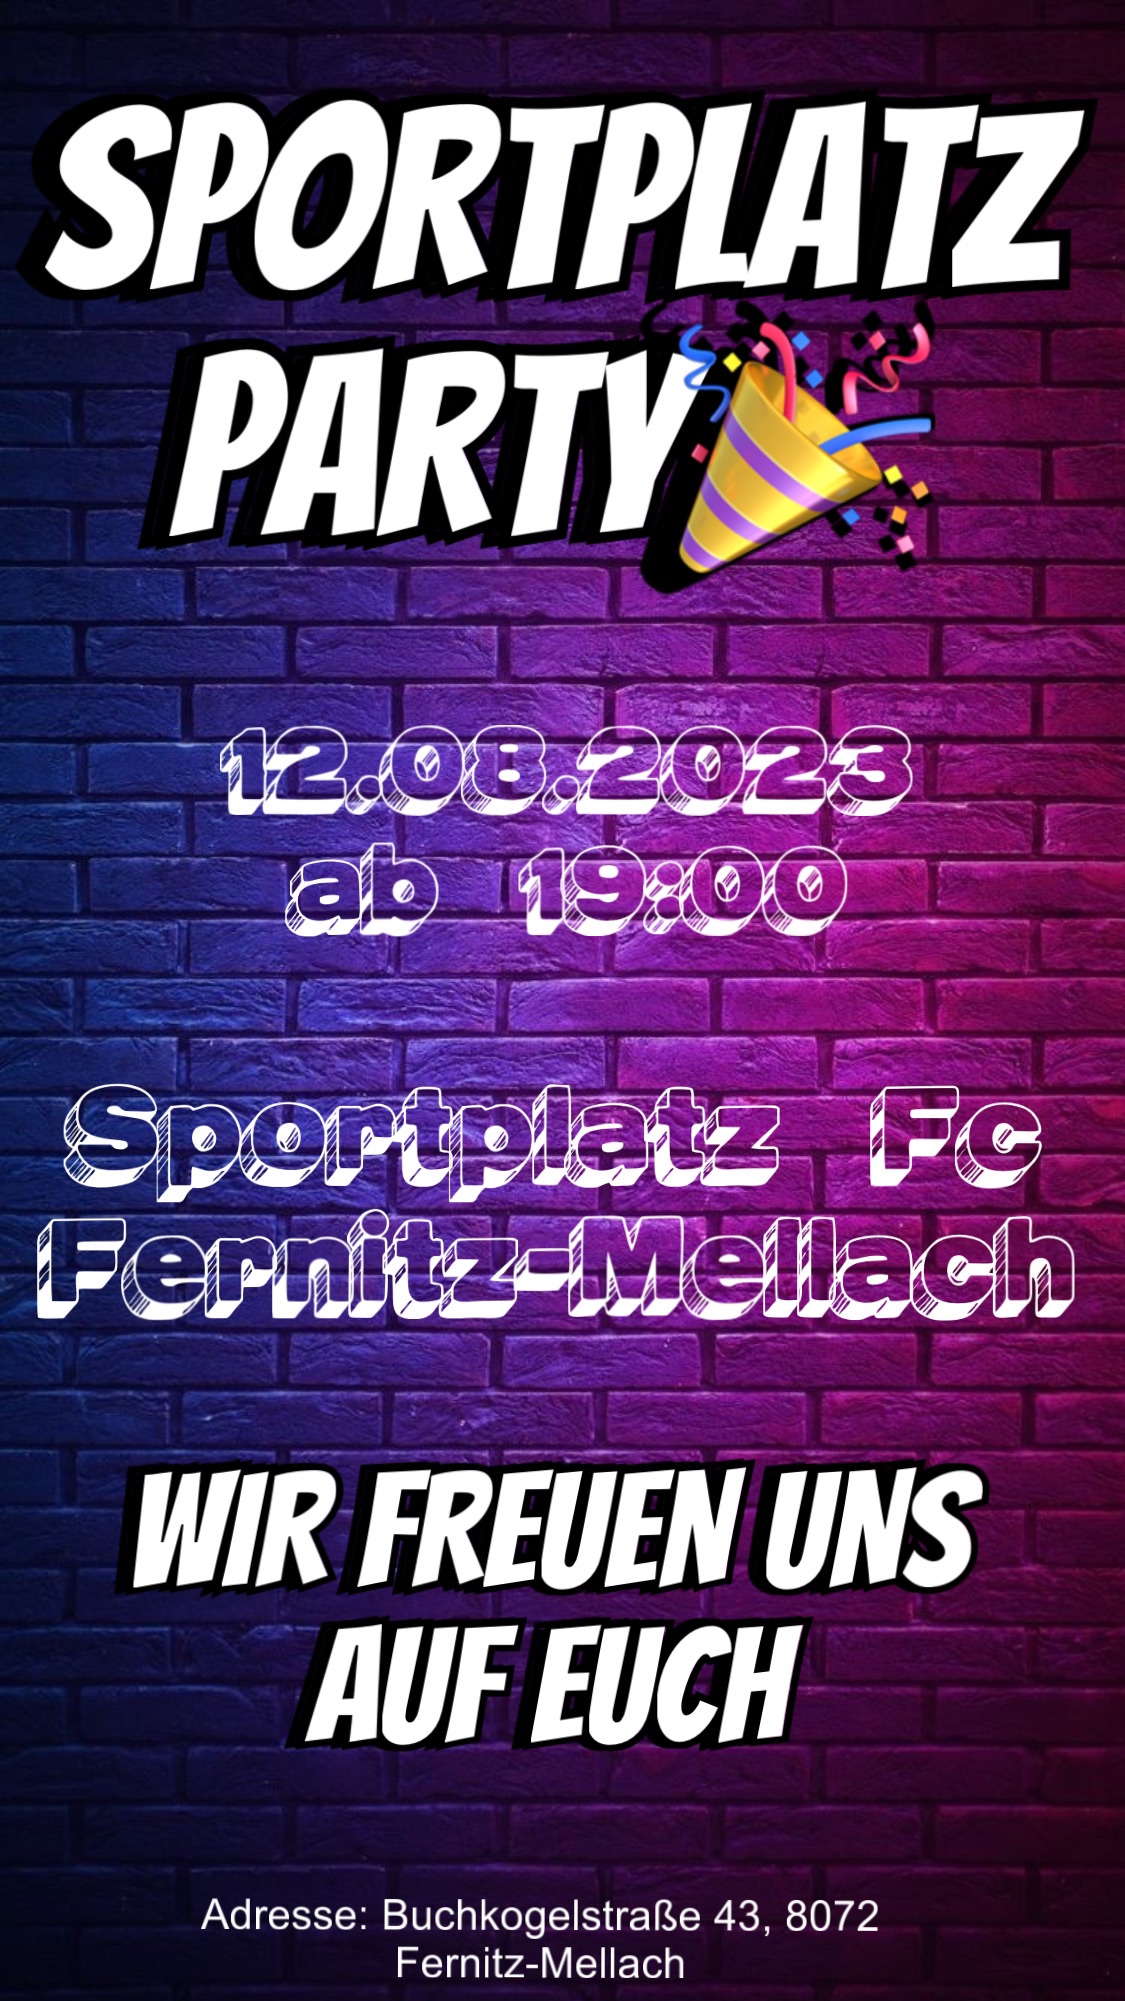 Sportplatz Party des FC Fernitz-Mellach